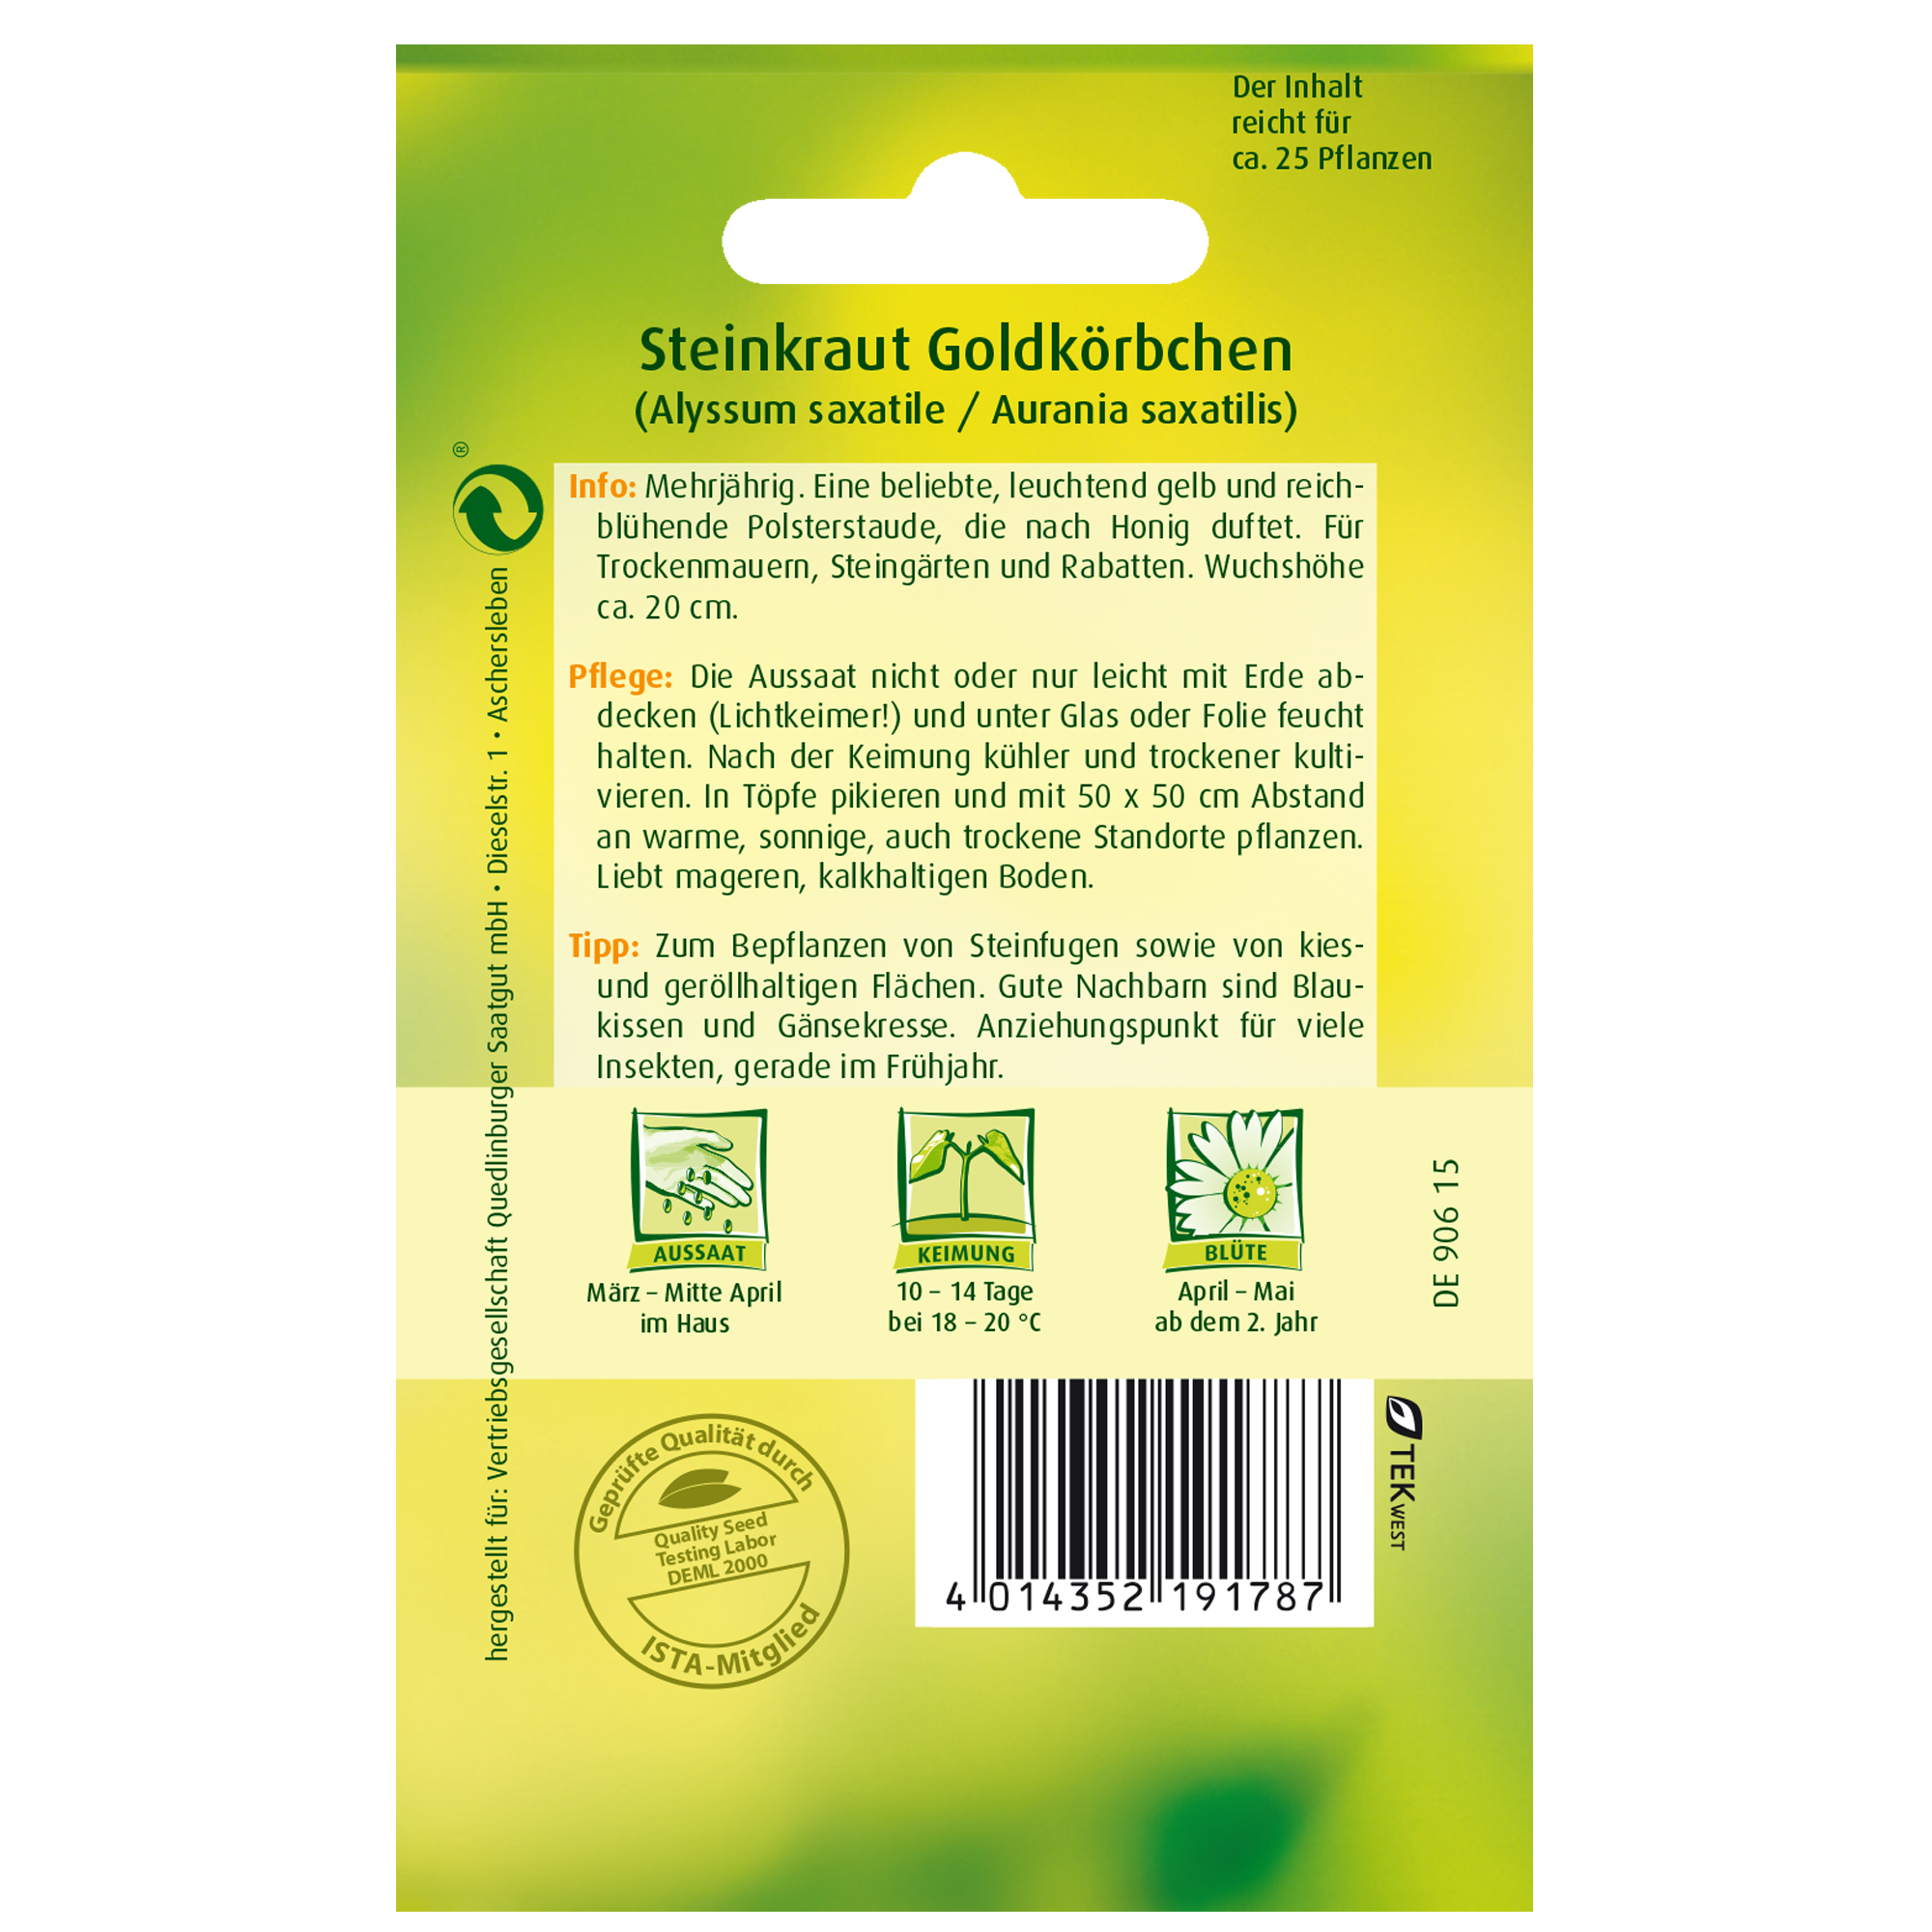 Steinkraut 'Goldkörbchen' + product picture